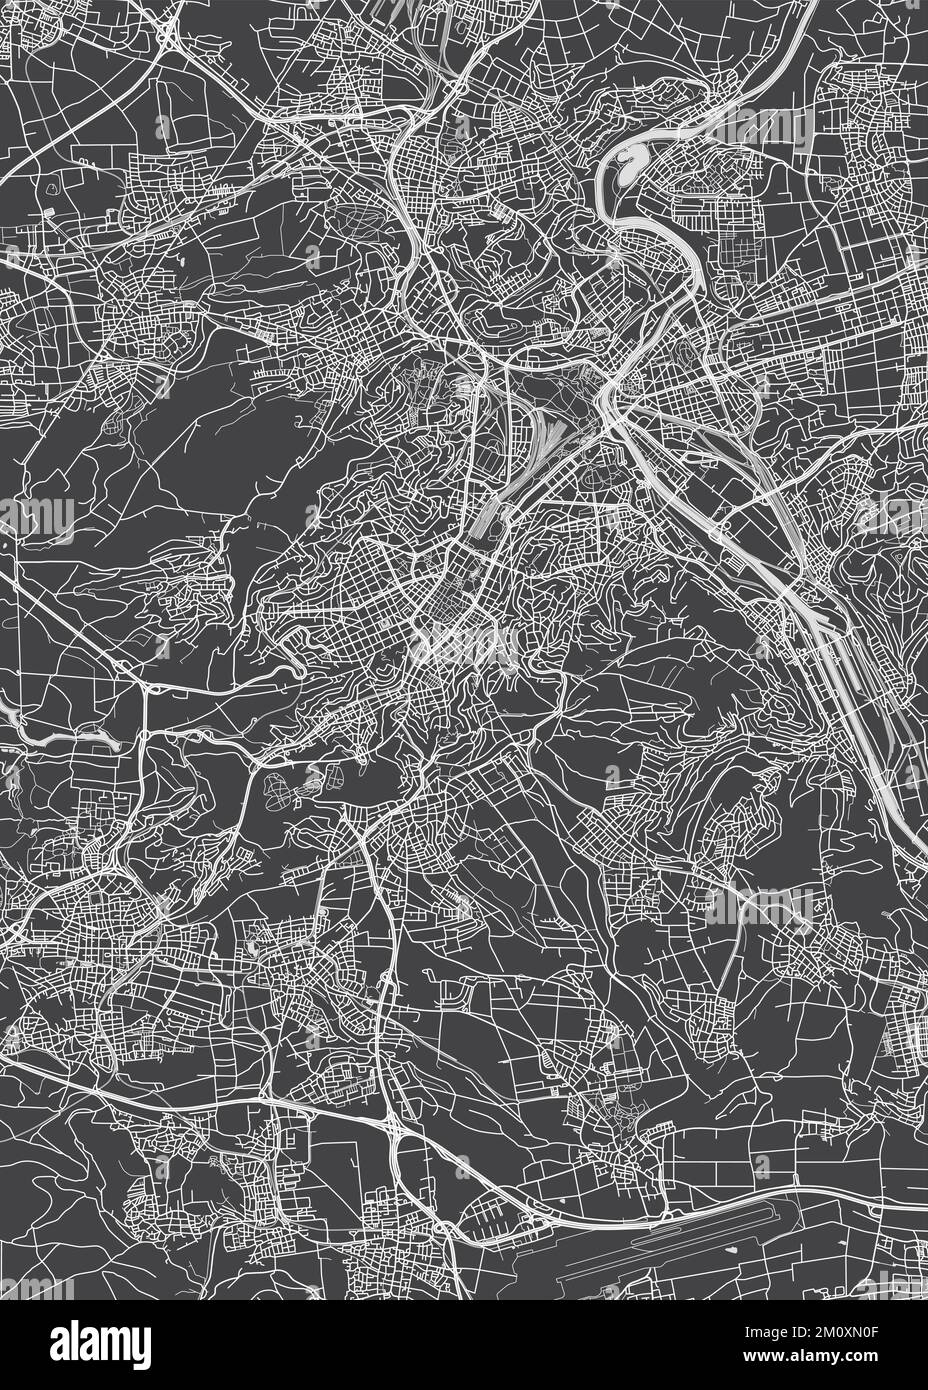 Mapa de la ciudad de Stuttgart, plano monocromo detallado, ilustración de vectores Ilustración del Vector